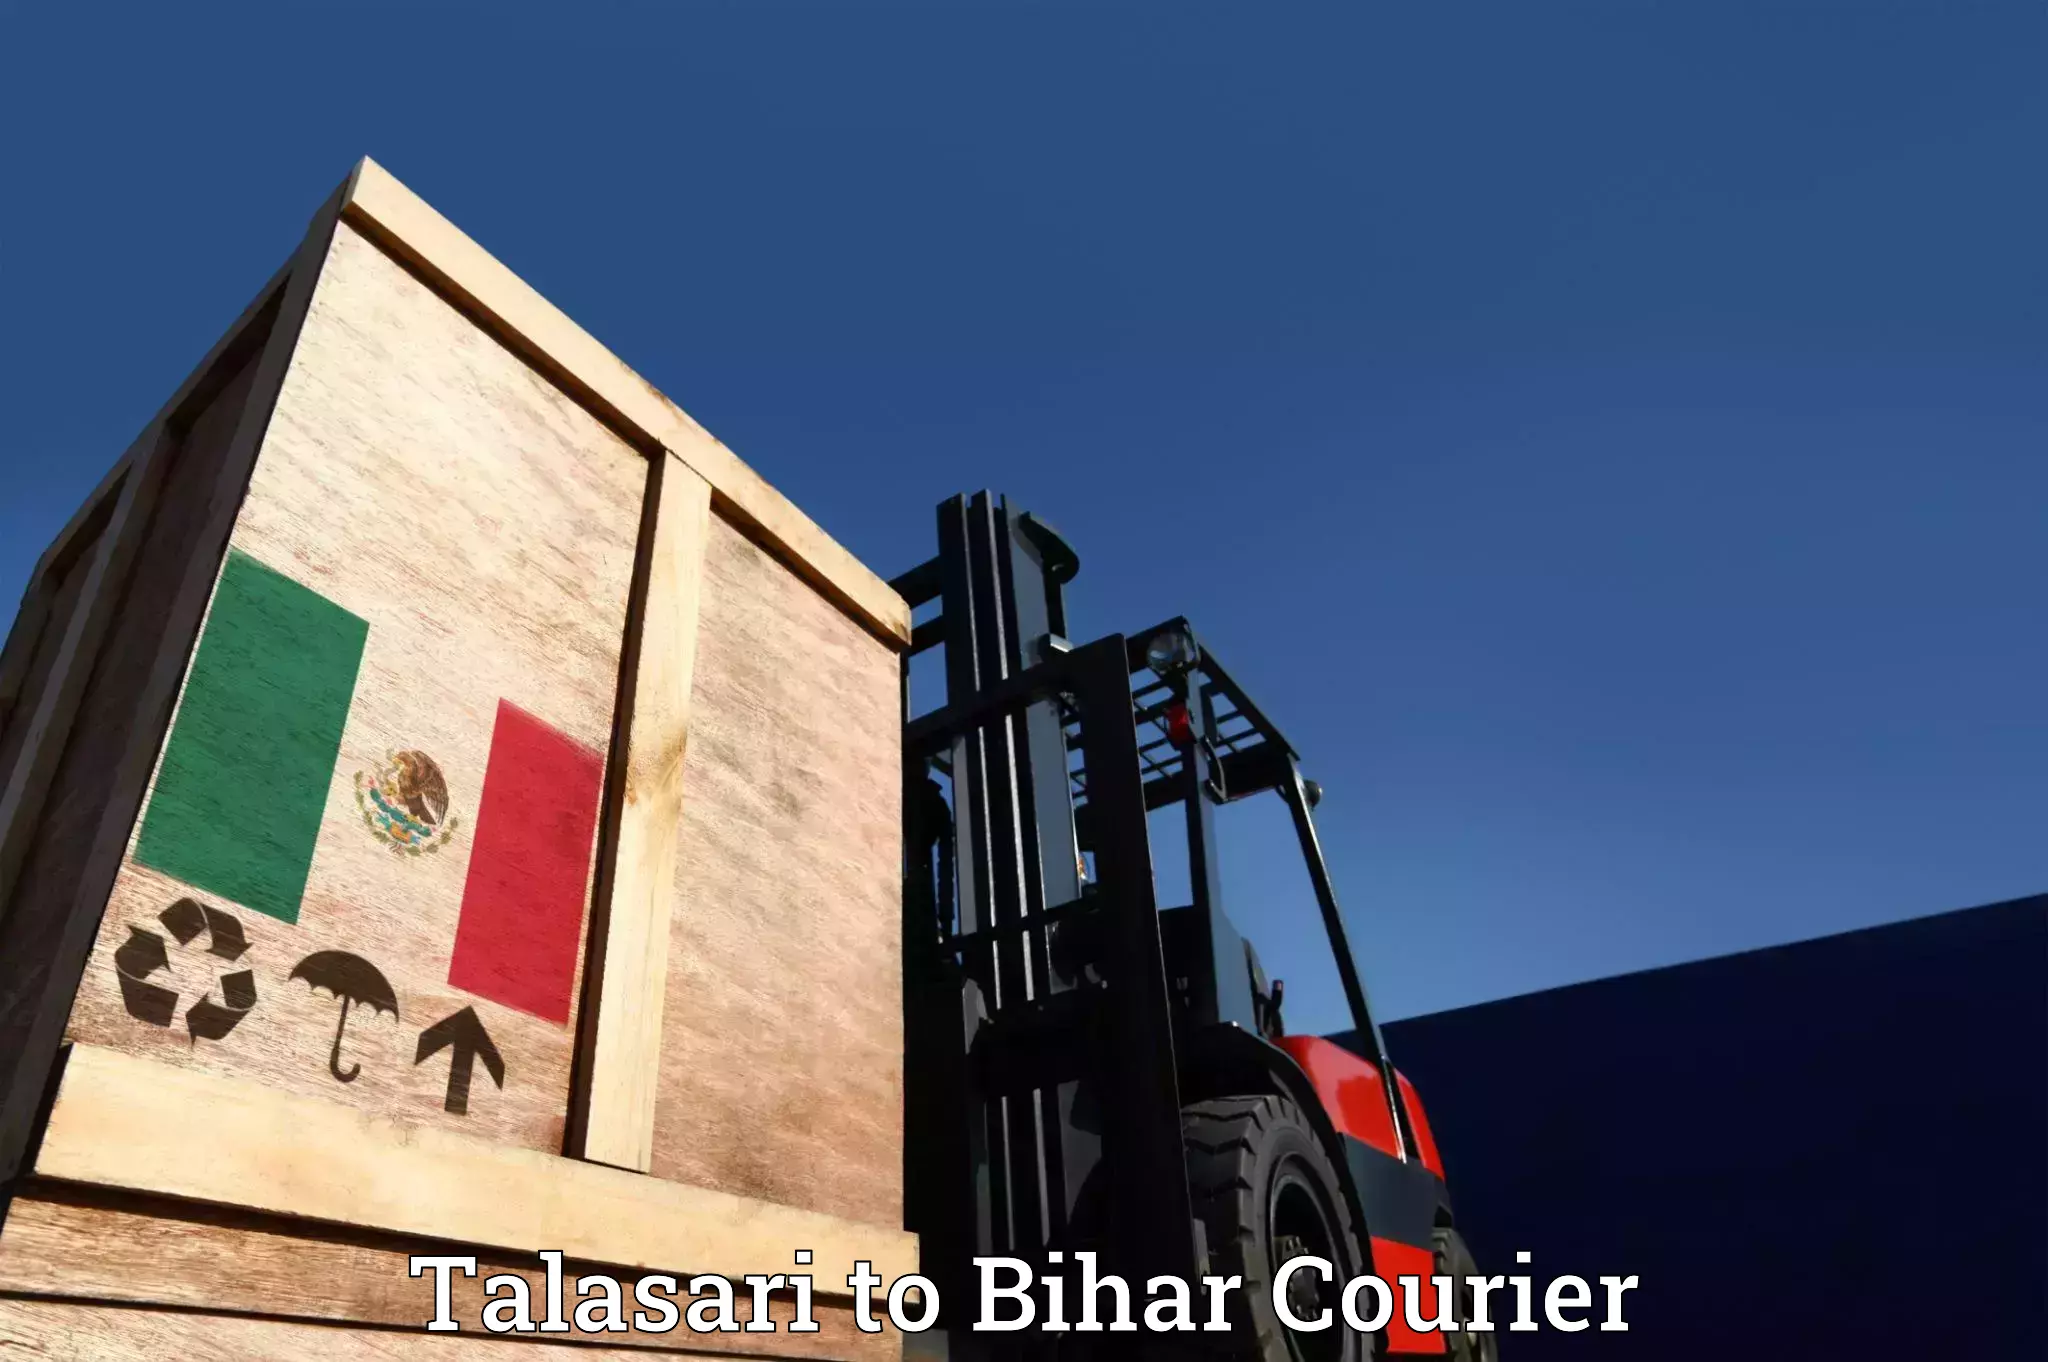 Furniture transport specialists Talasari to Jhanjharpur